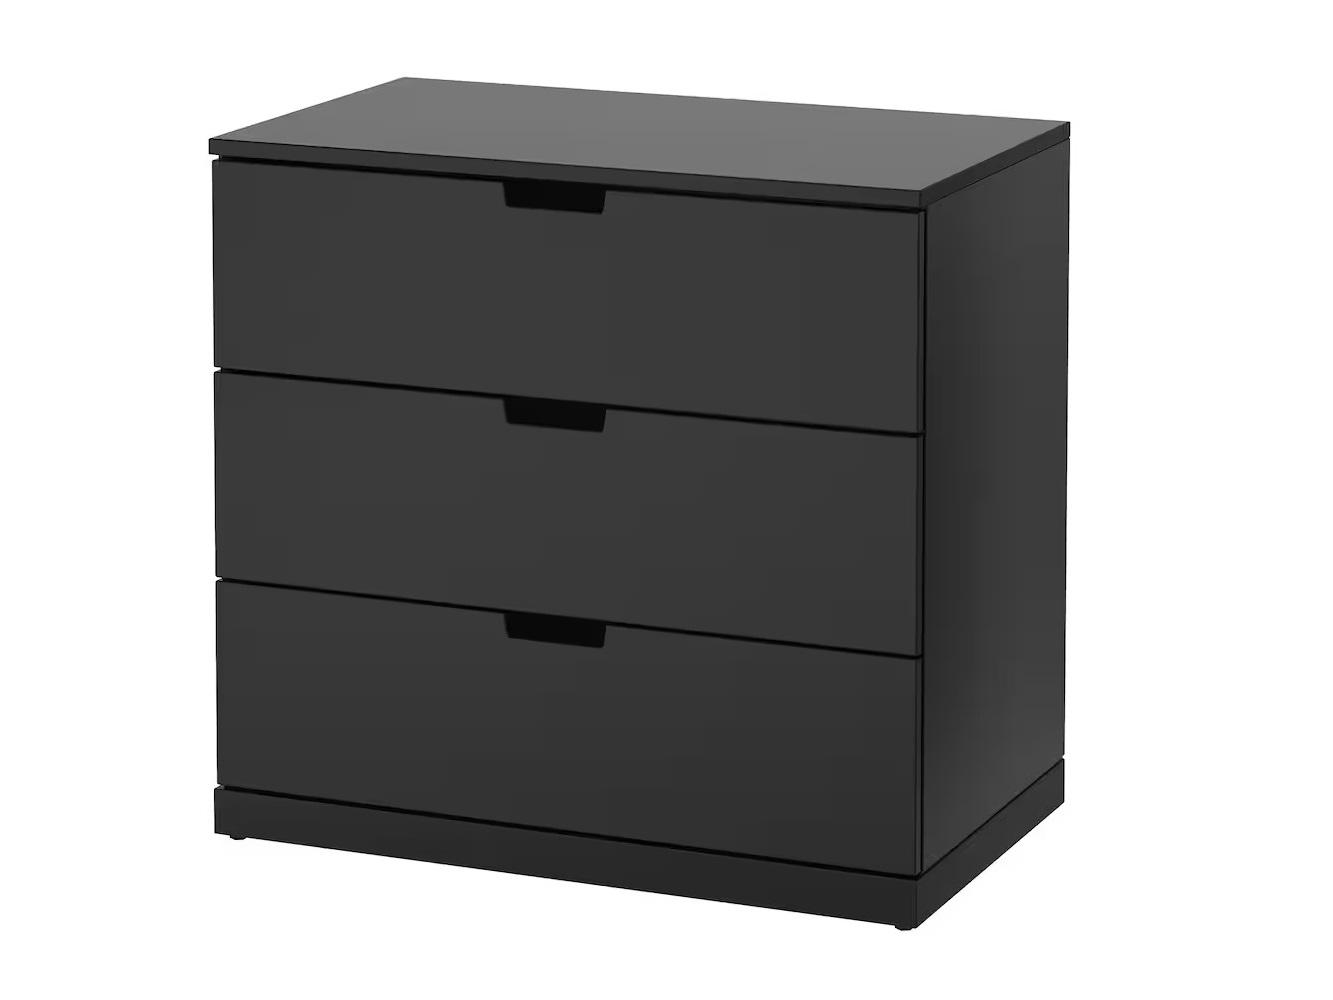 Комод Нордли 21 black ИКЕА (IKEA) изображение товара